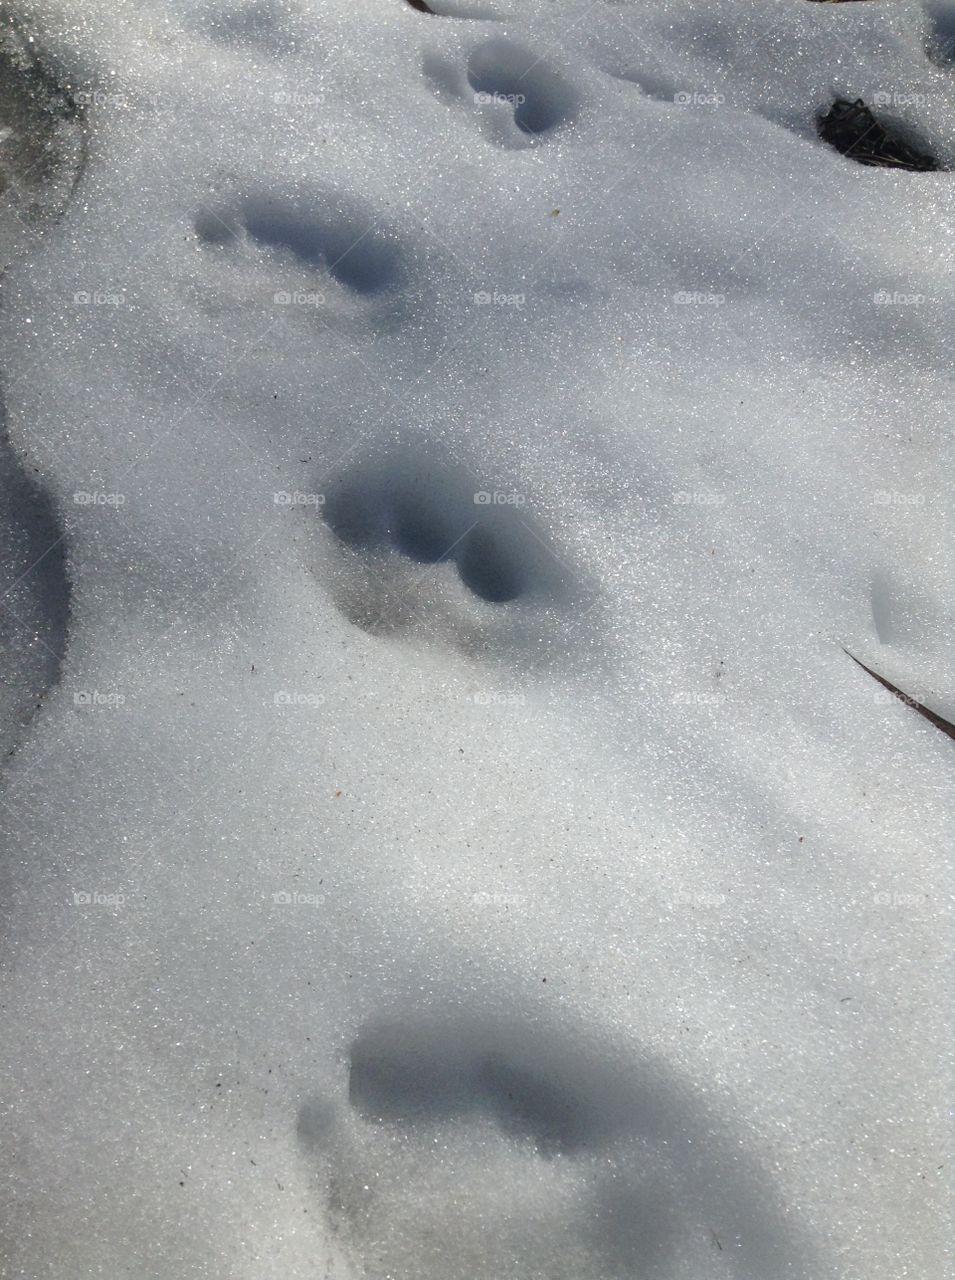 Snowy paw print trail